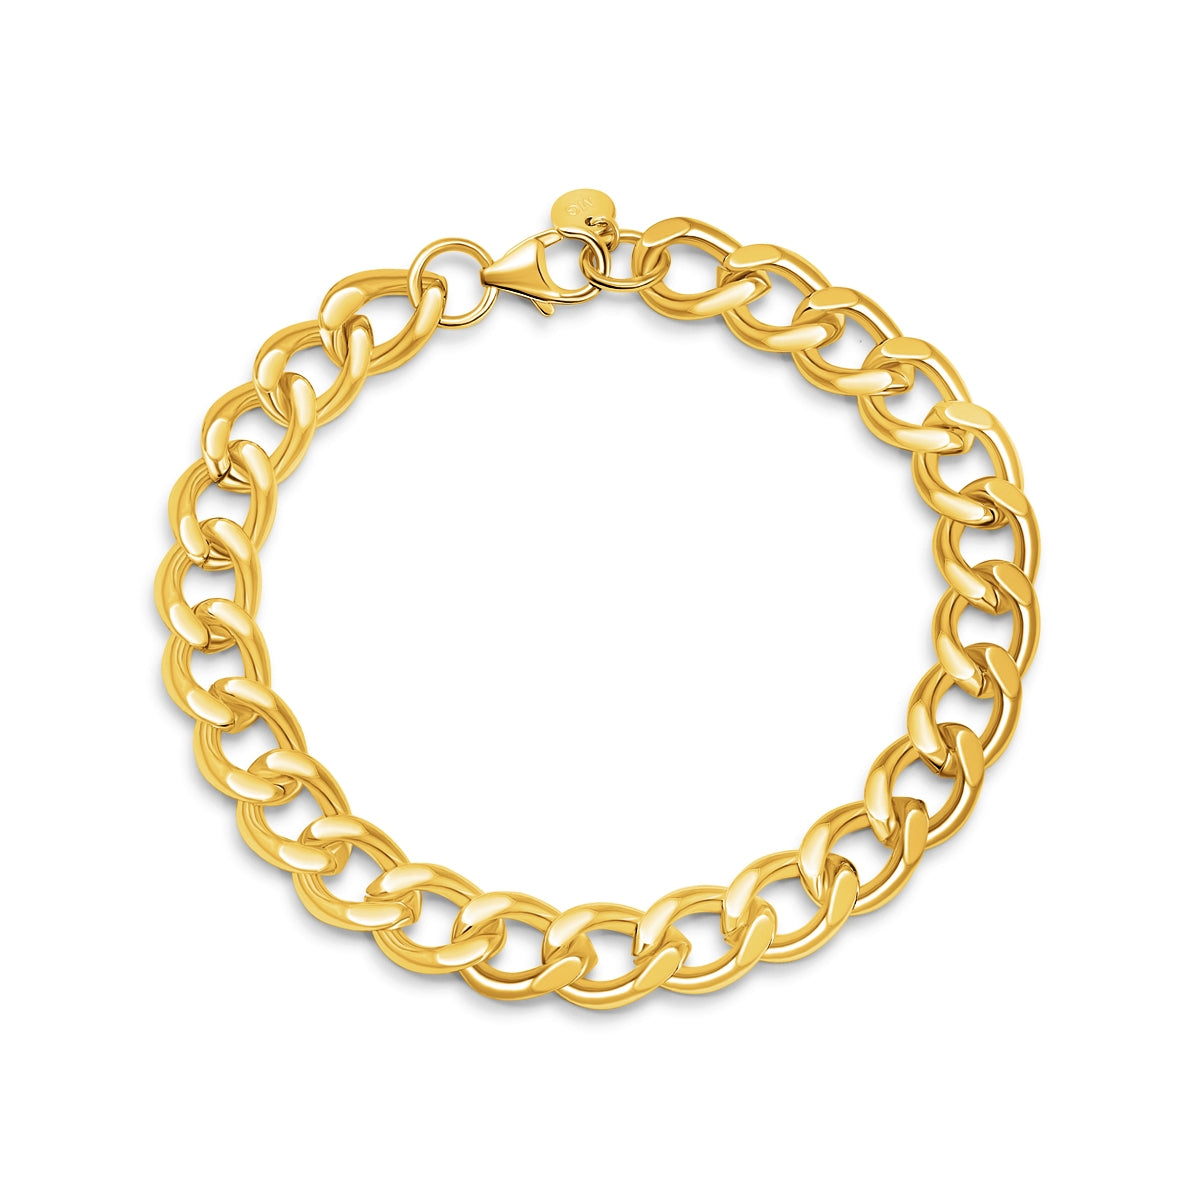 Gold cuban chain bracelet